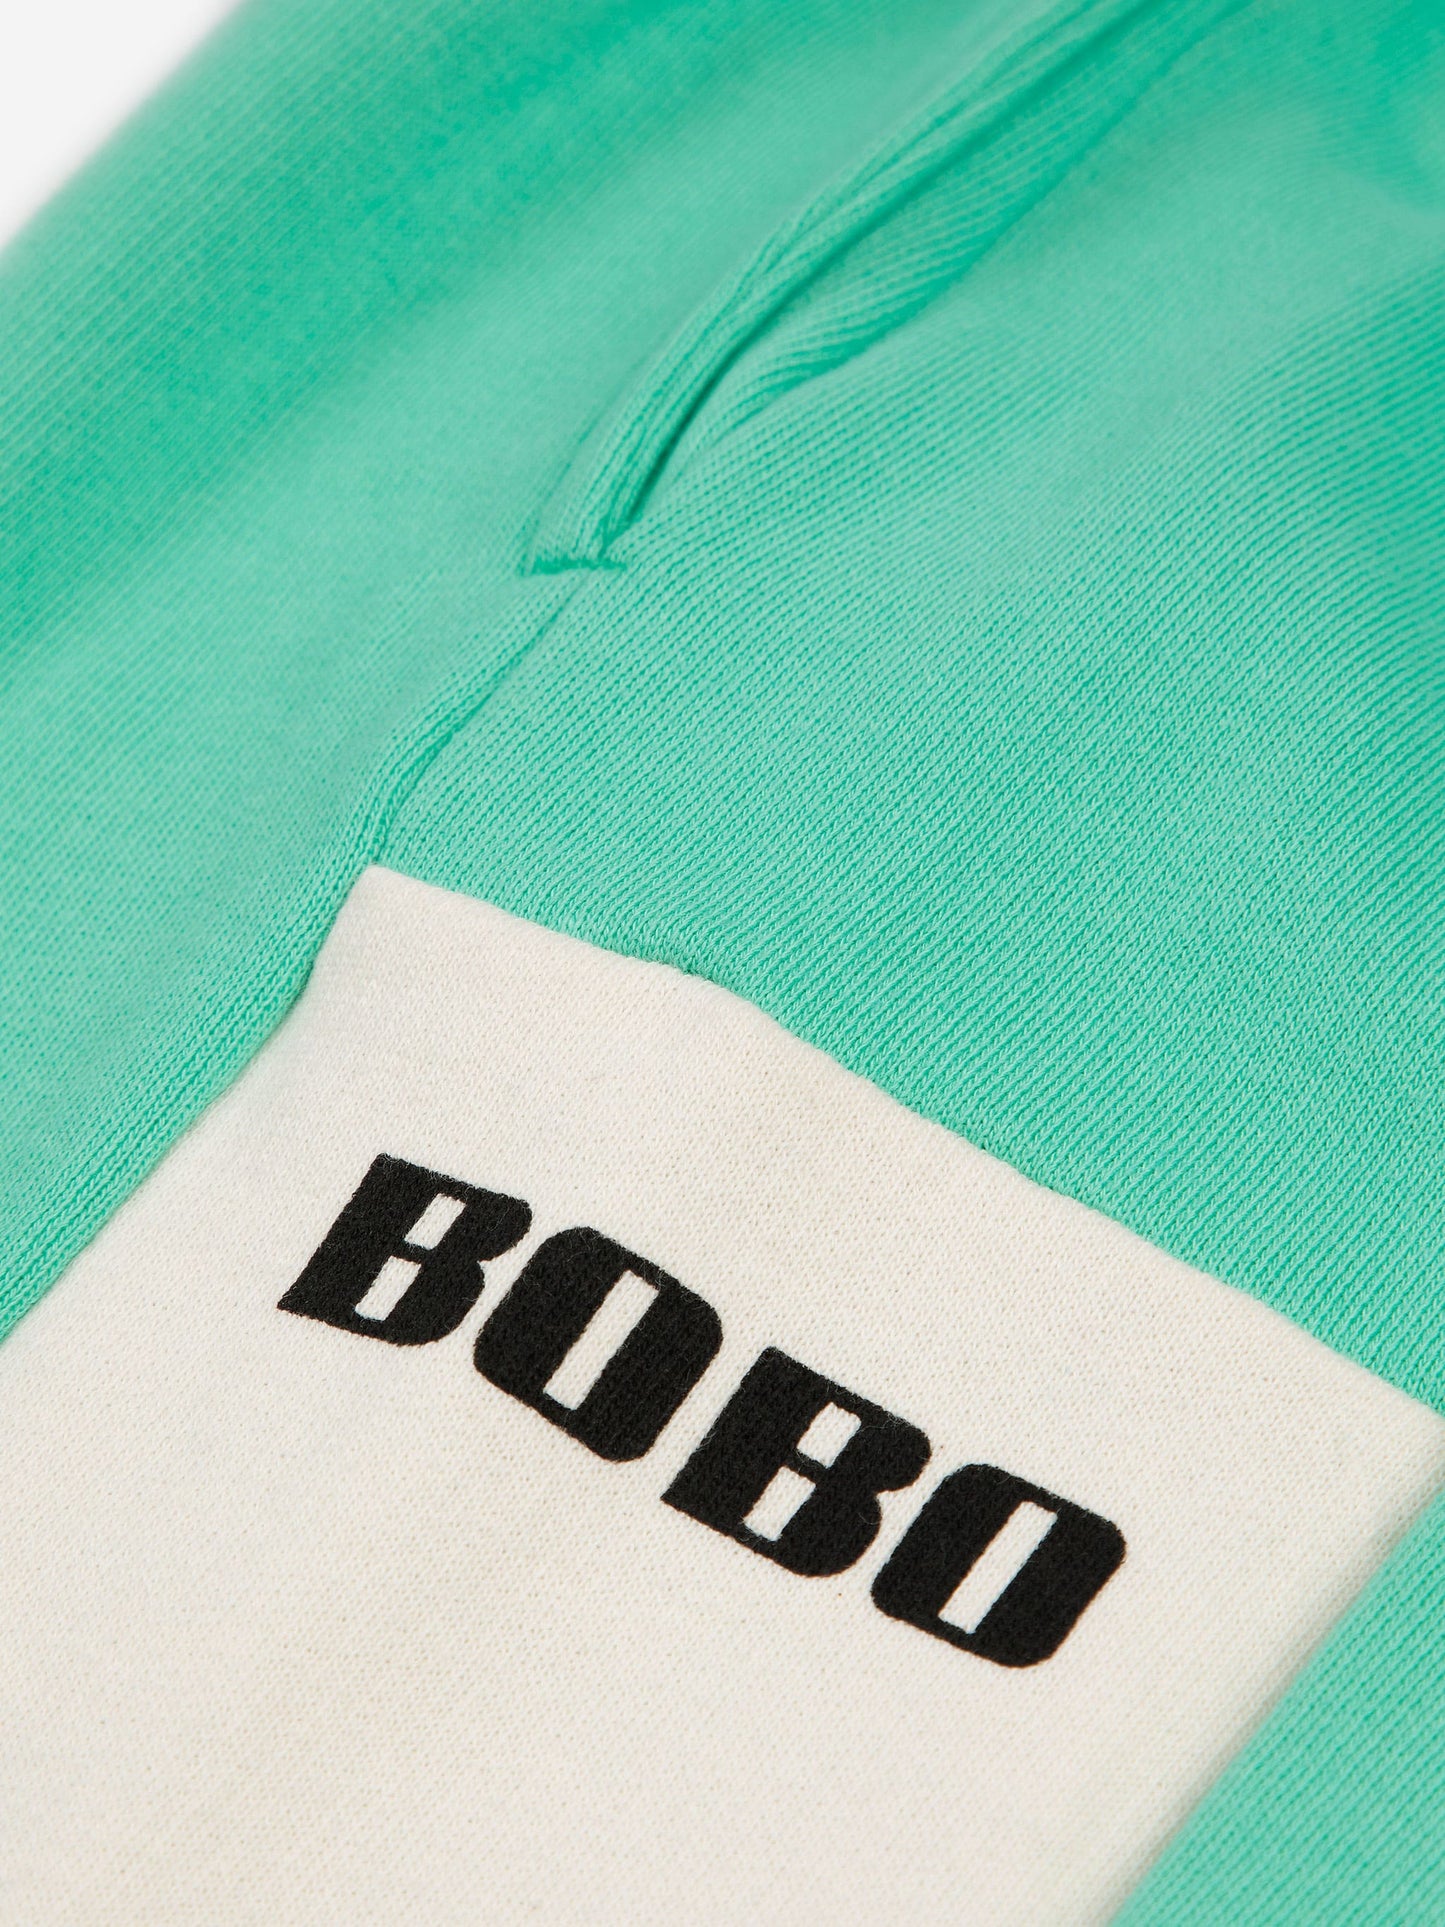 Pantalón de chándal Bobo bloques de color